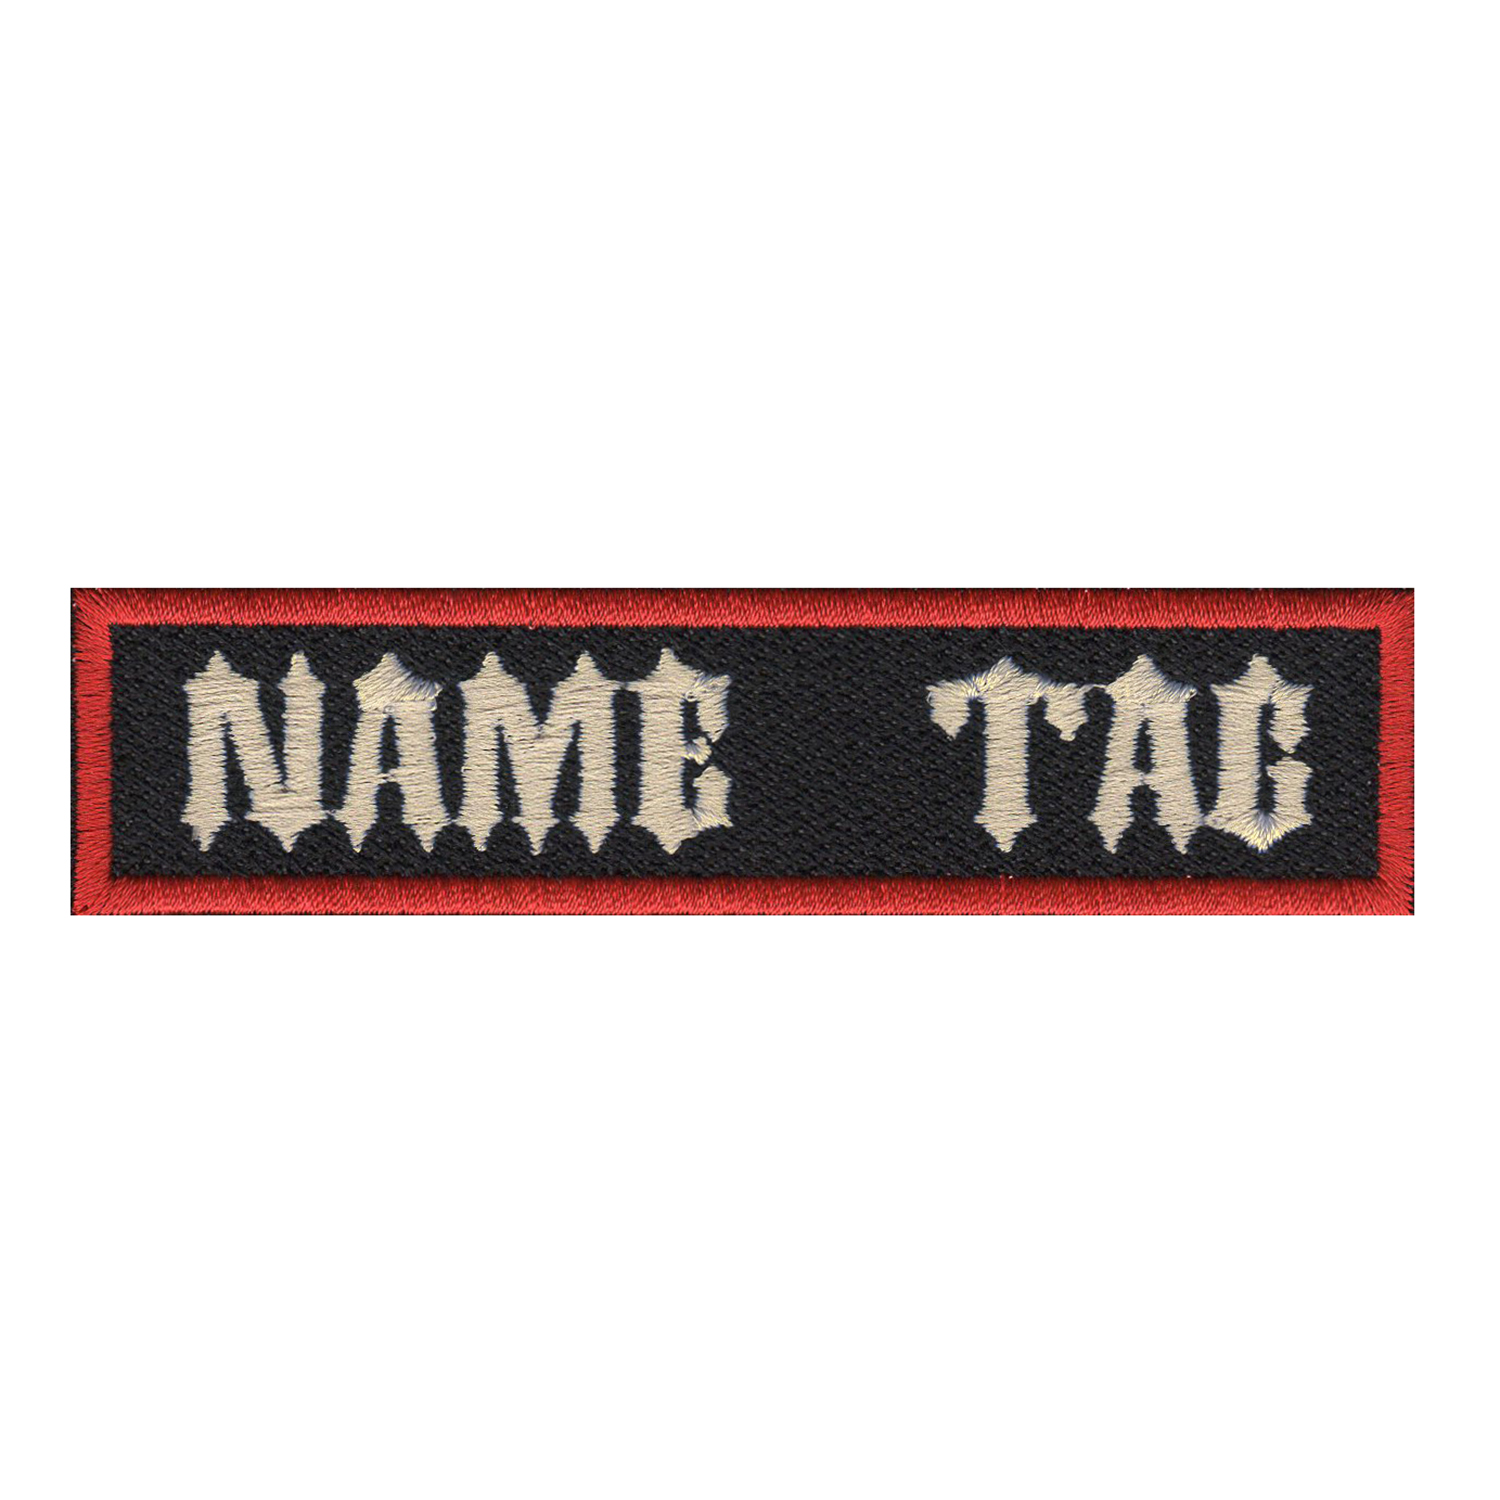 NAME TAG